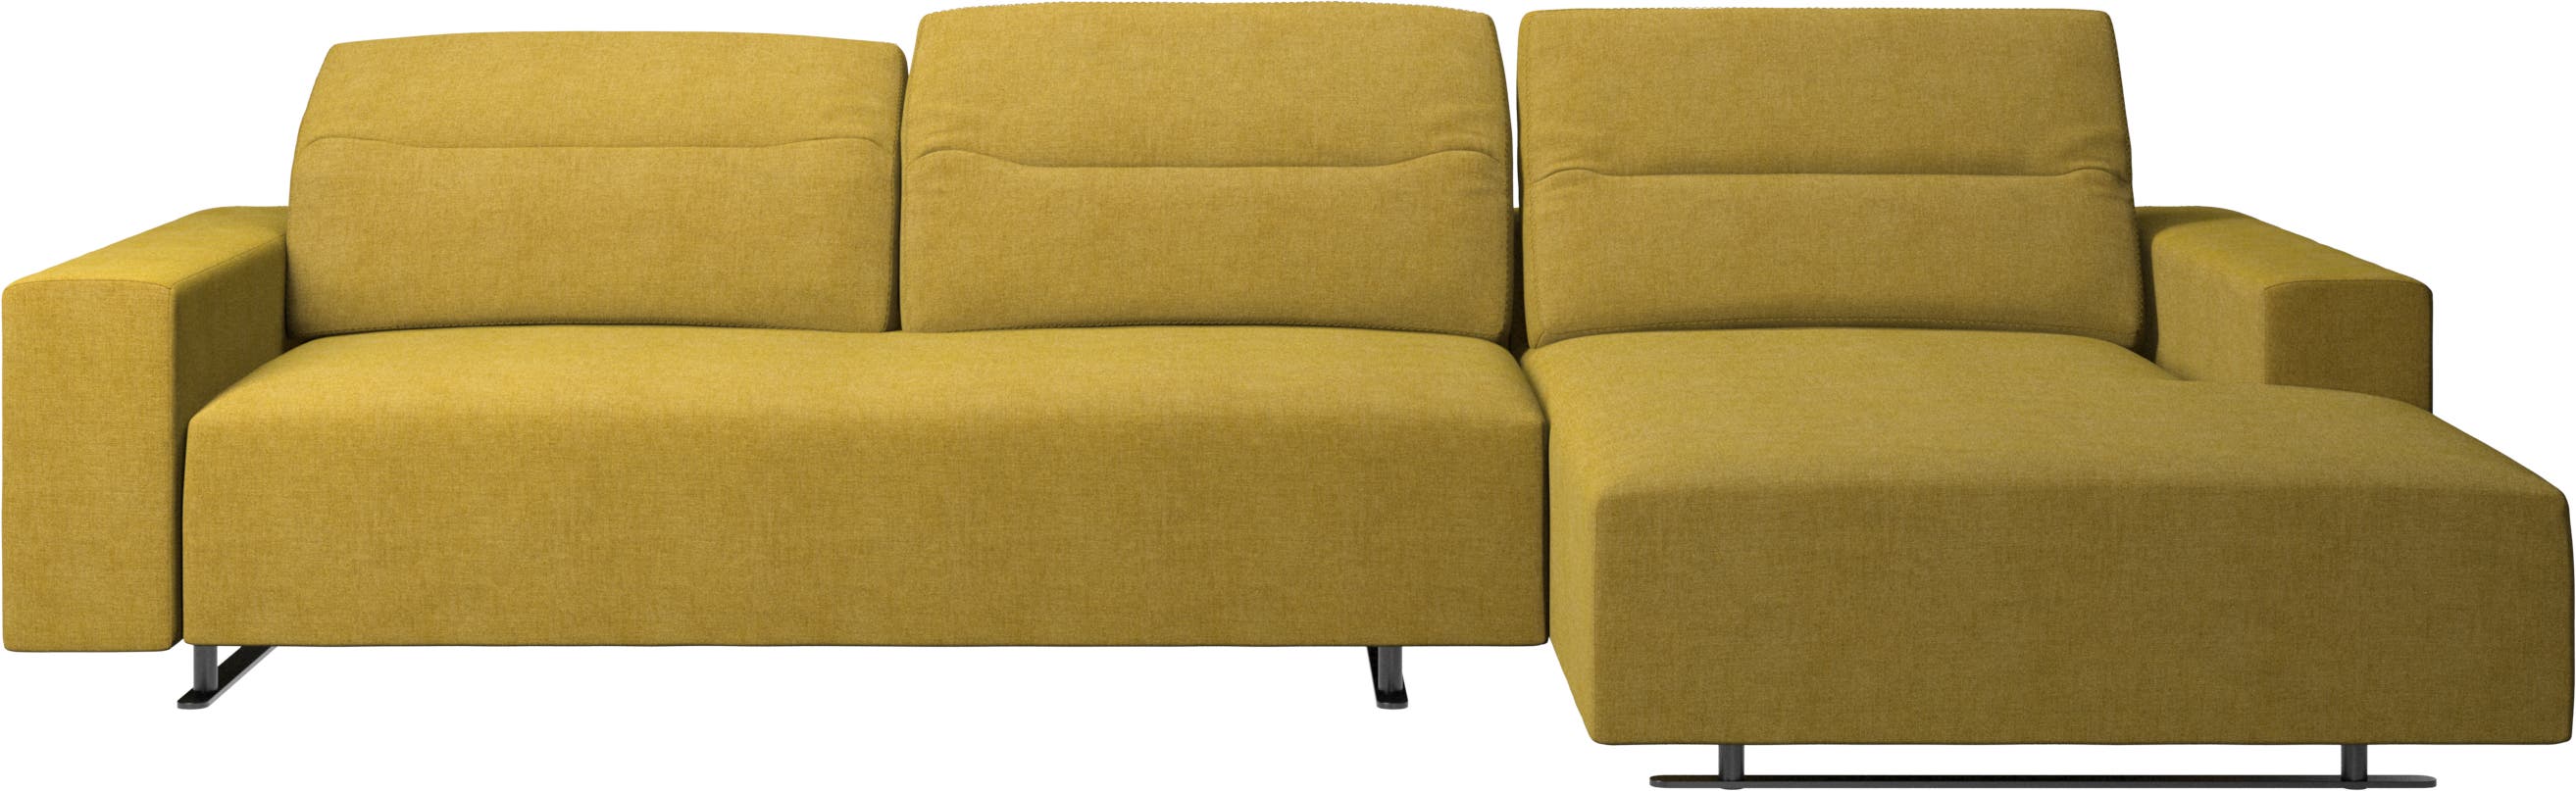 Sofa Hampton con respaldo ajustable , unidad de descanso y almacenaje en el lado izquierdo